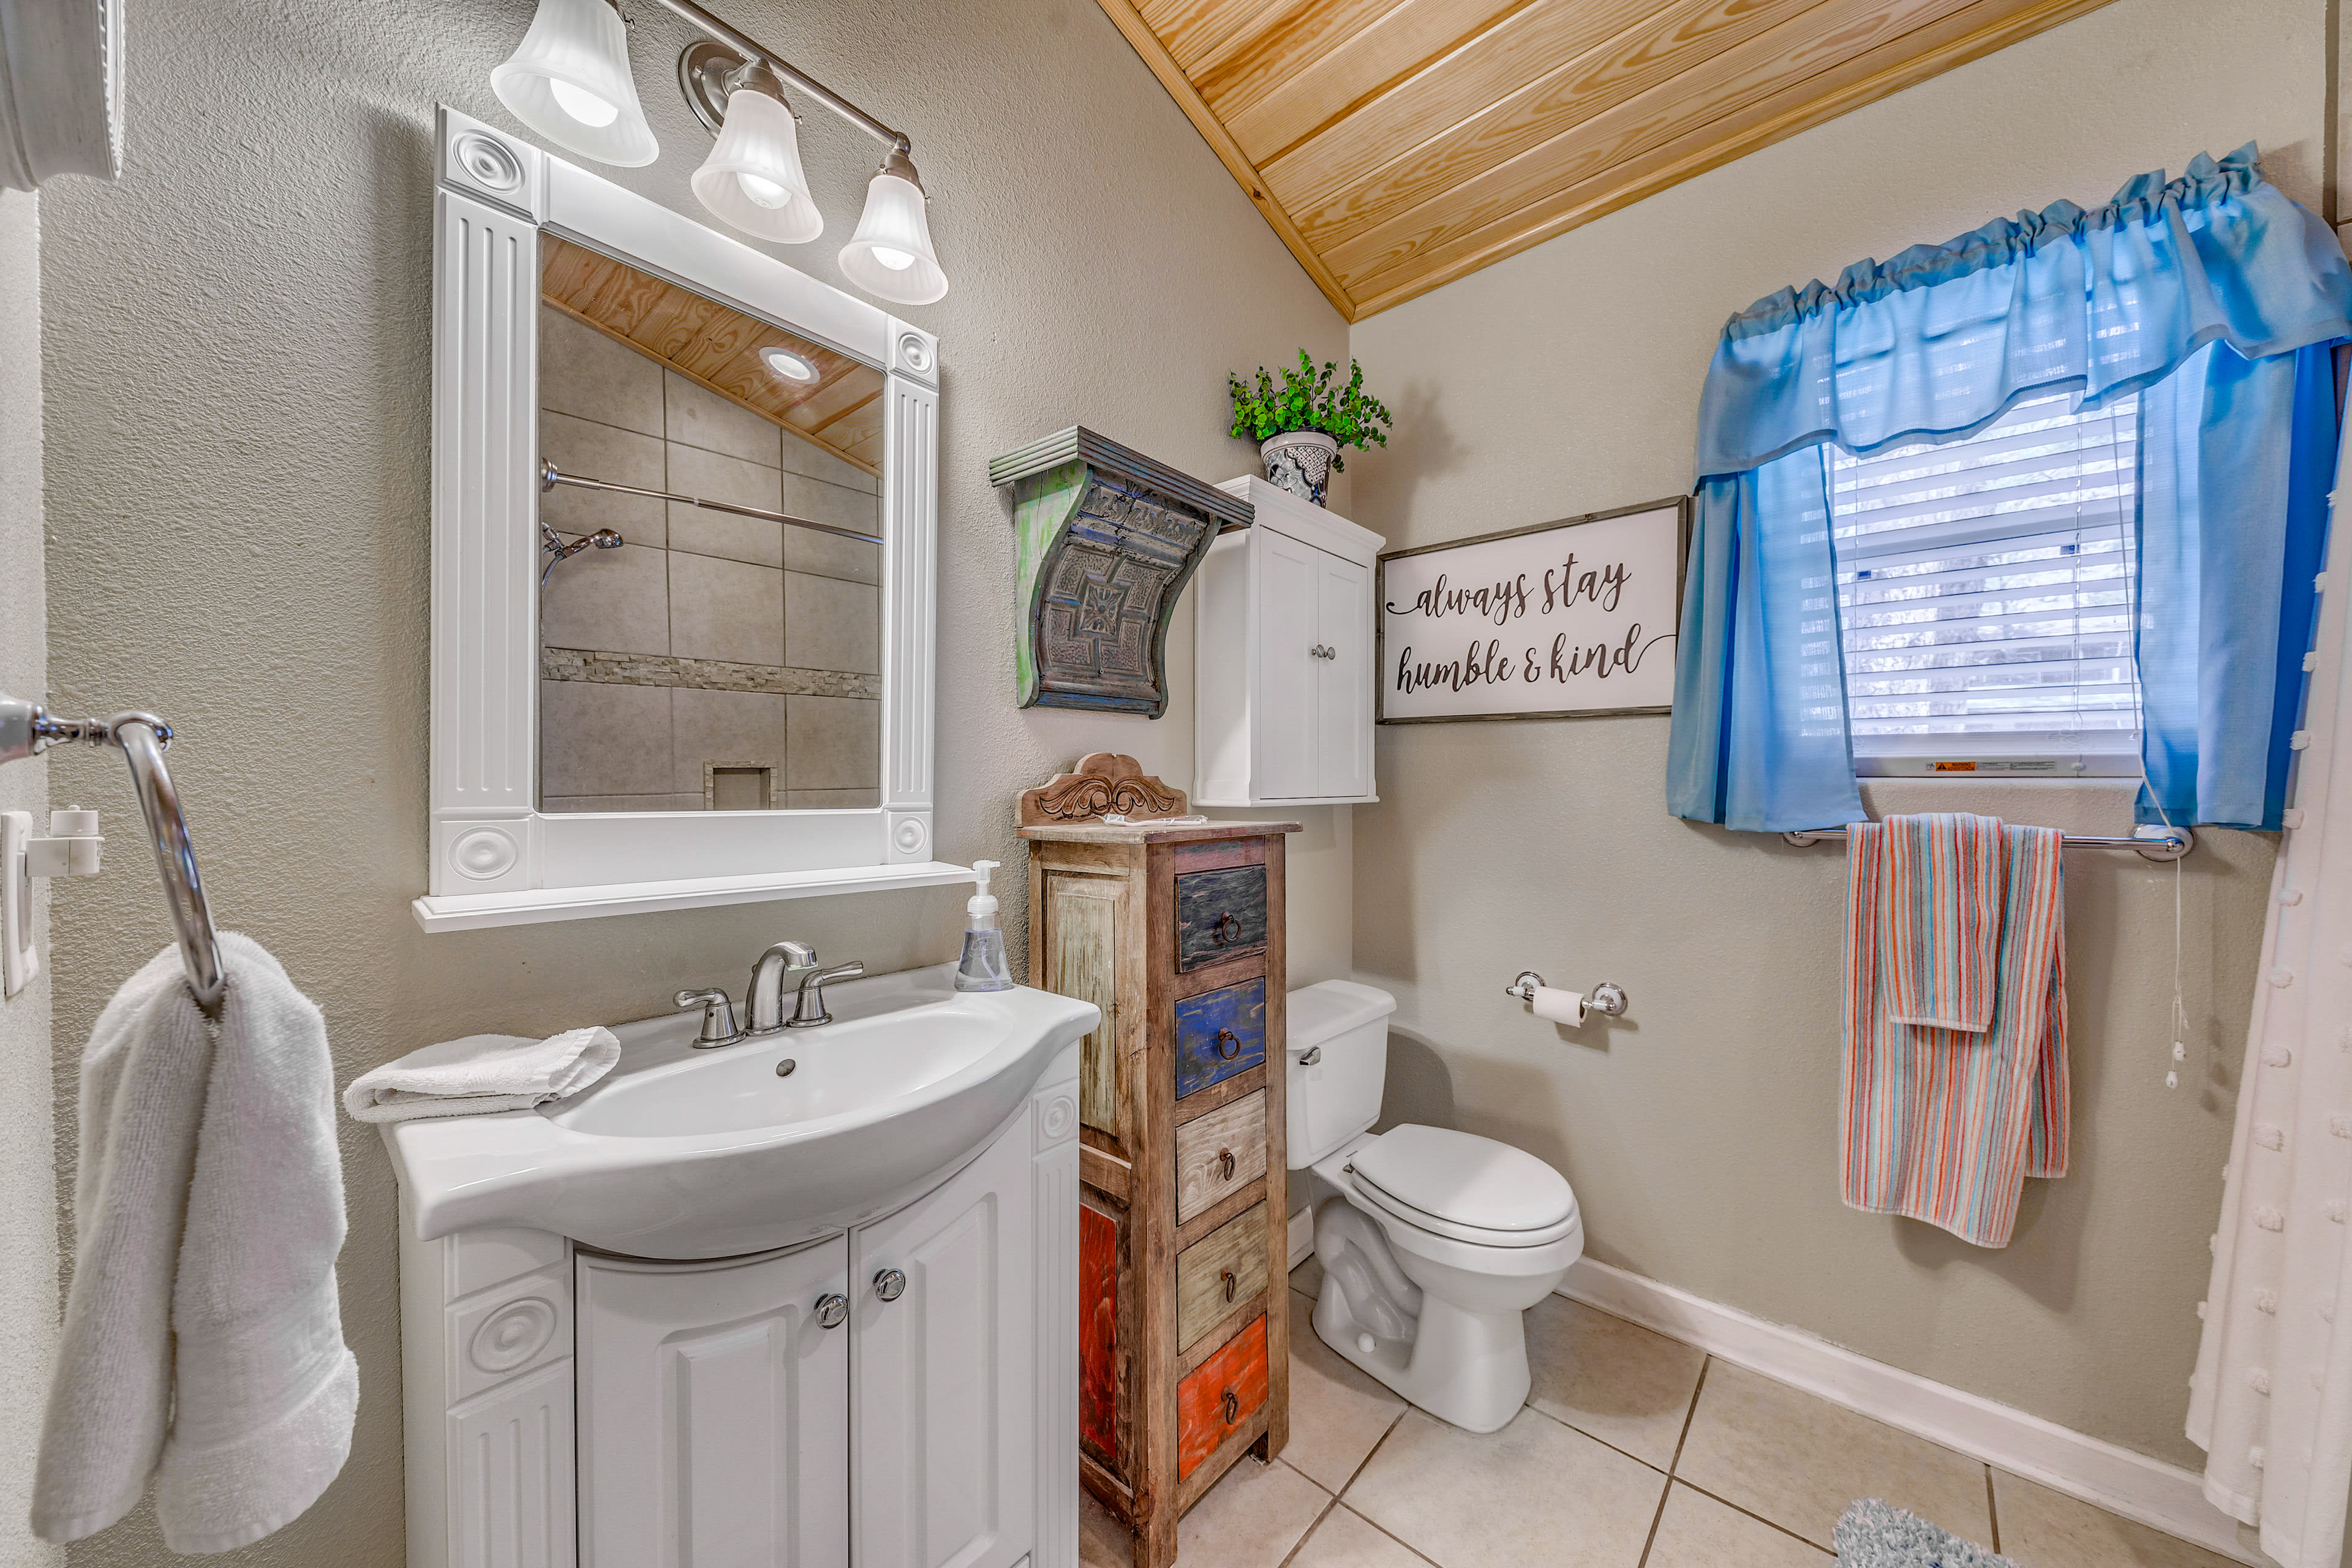 Bathroom | Complimentary Toiletries | Towels Provided | Main Floor